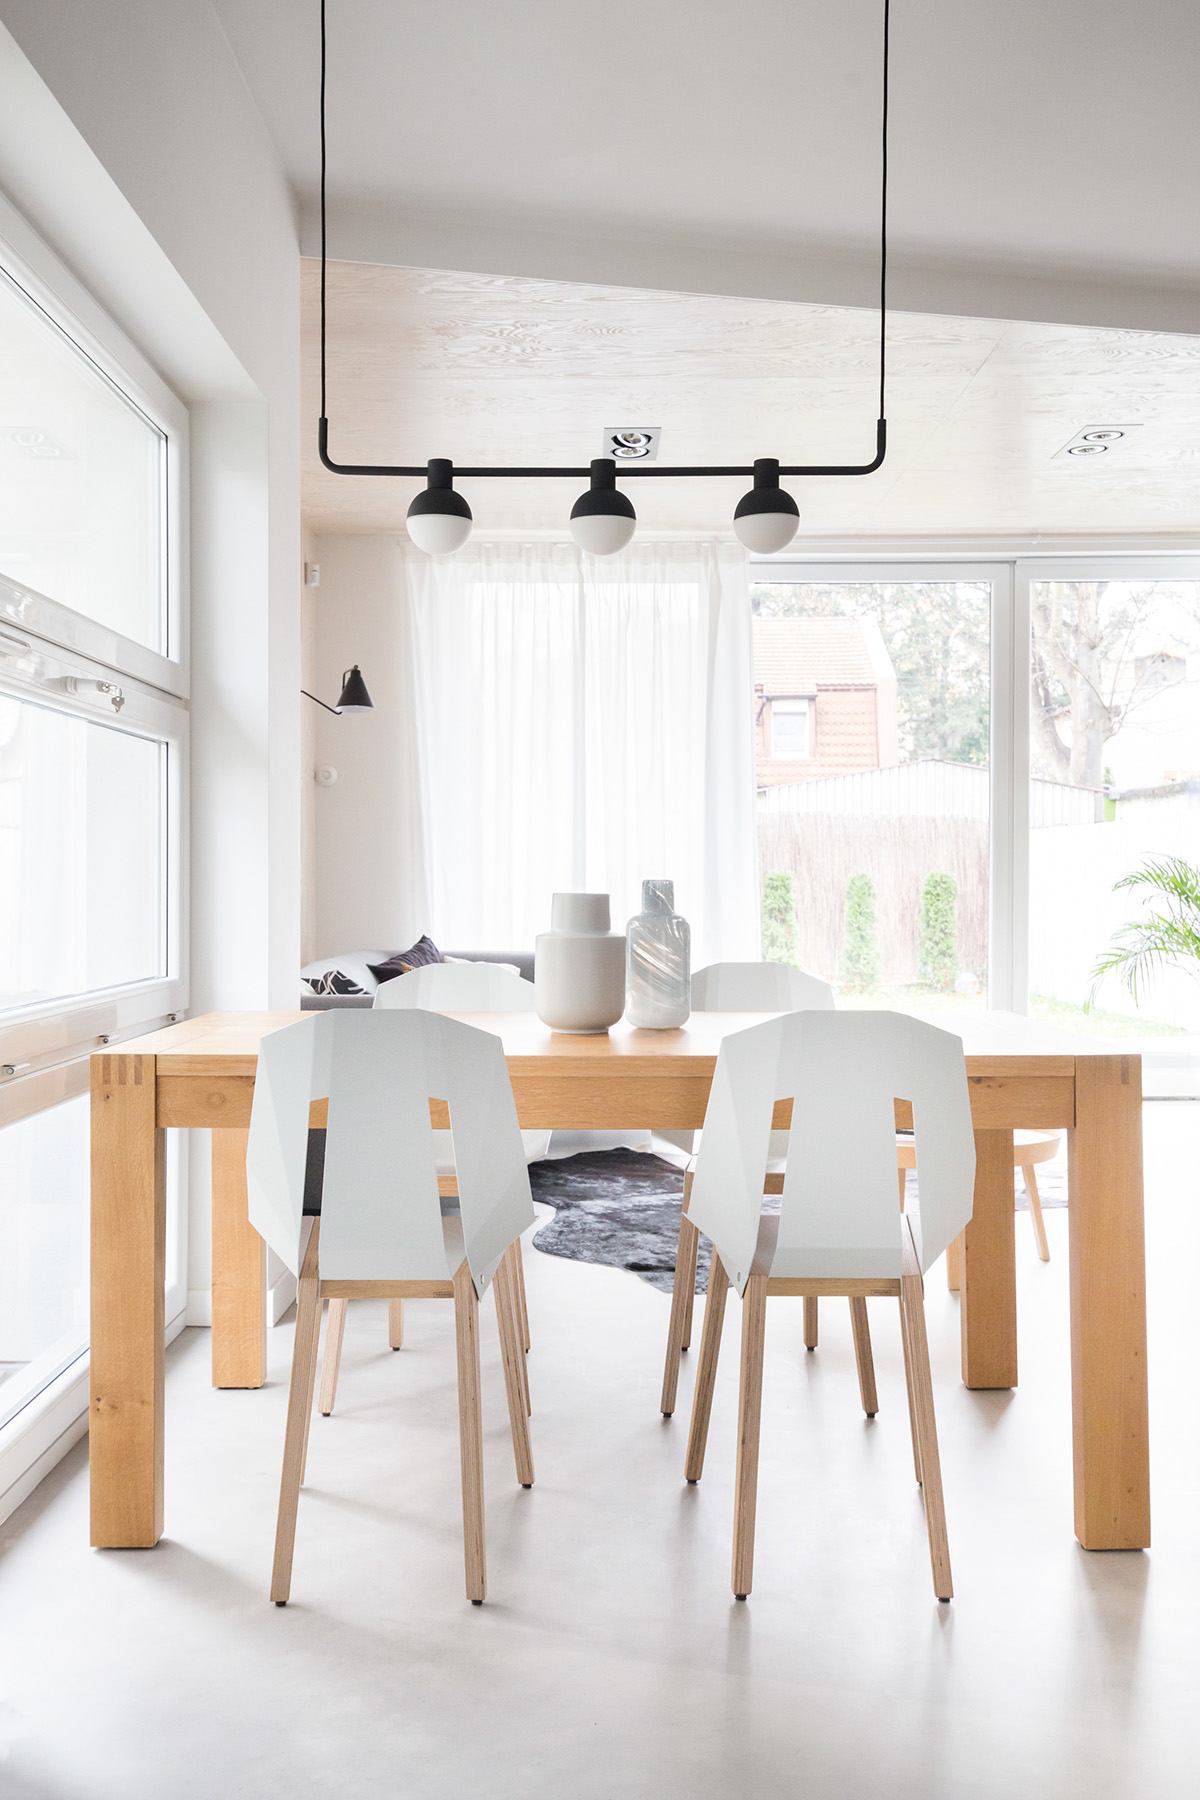 Bộ bàn ghế ăn bằng gỗ với lưng ghế màu trắng hiện đại được sử dụng tại khu vực bếp của ngôi nhà.